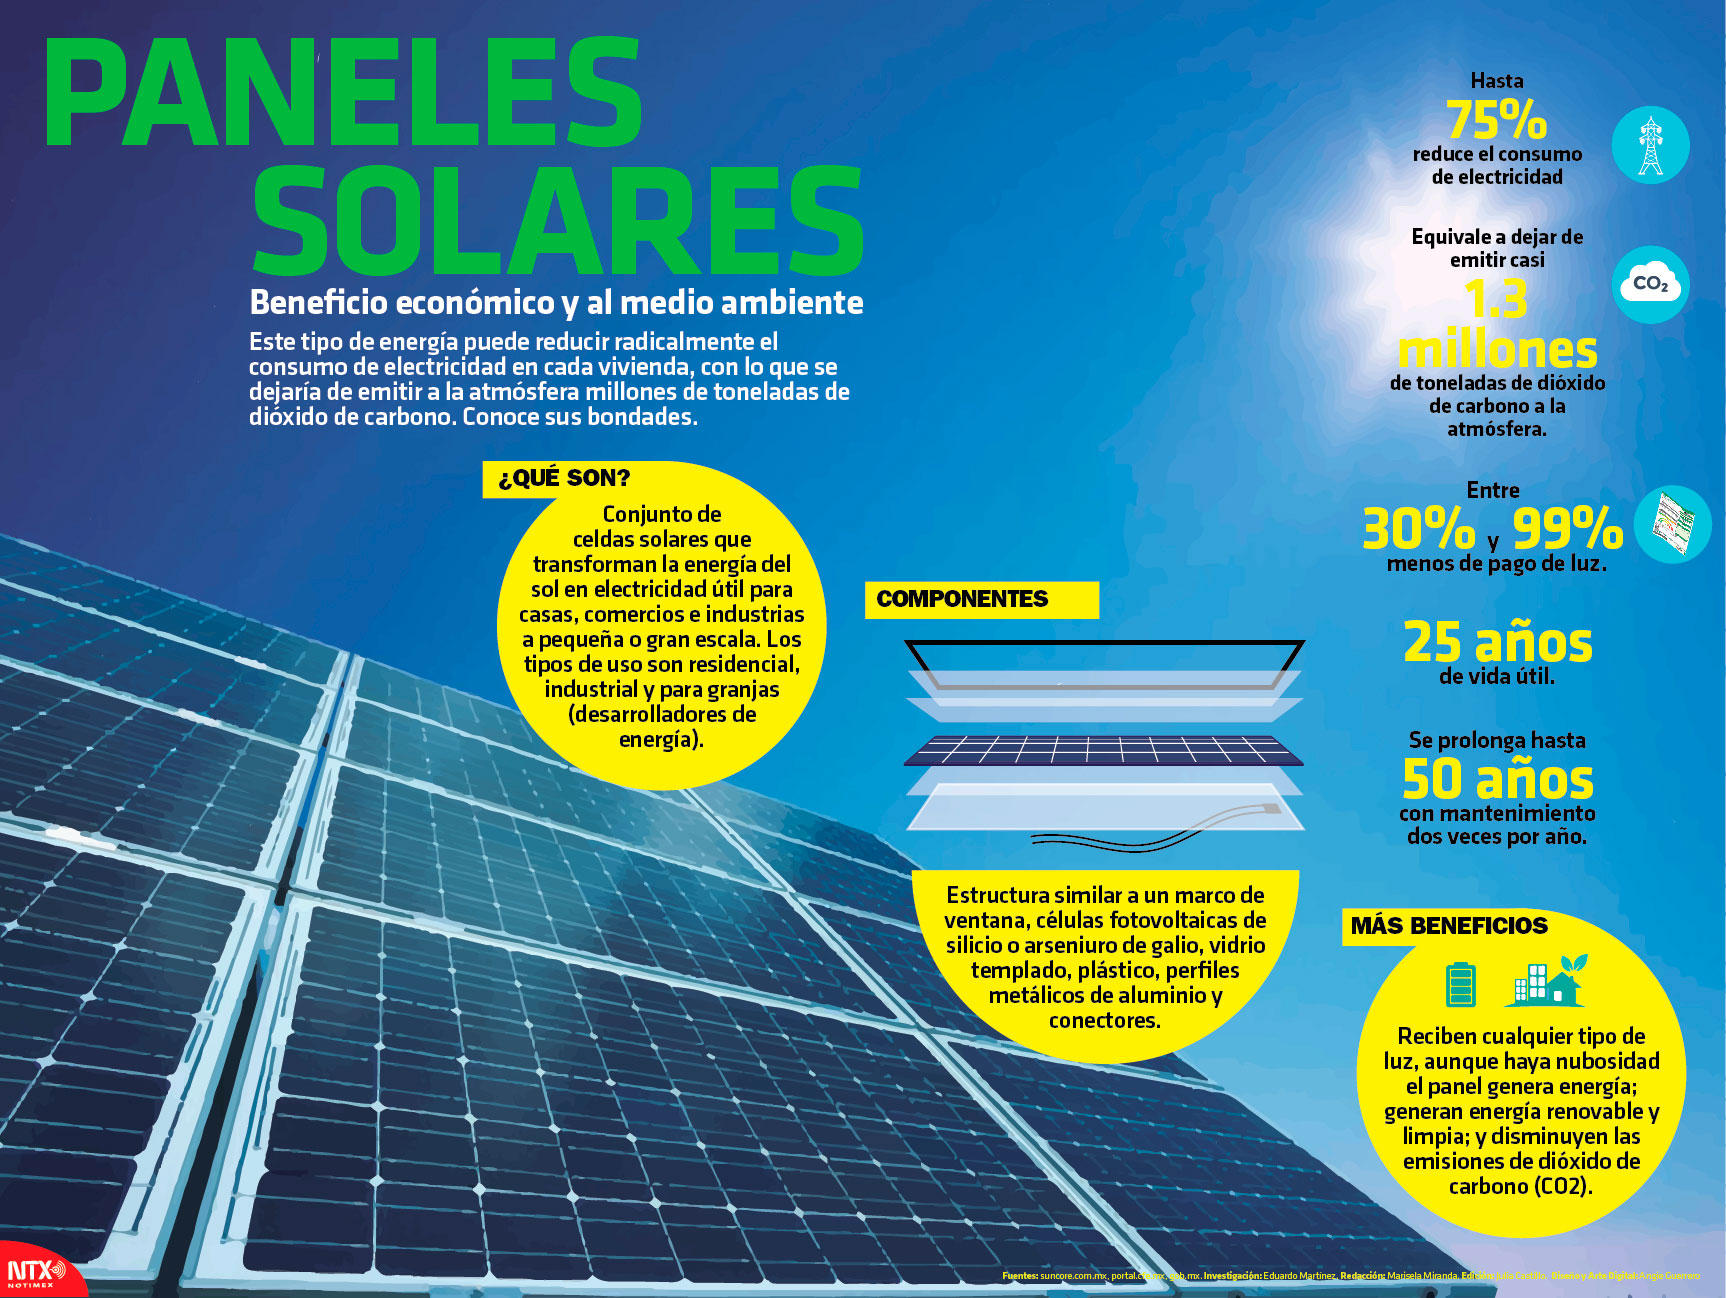 Hoy Tamaulipas - Infografía: Paneles solares, beneficio y al medio ambiente